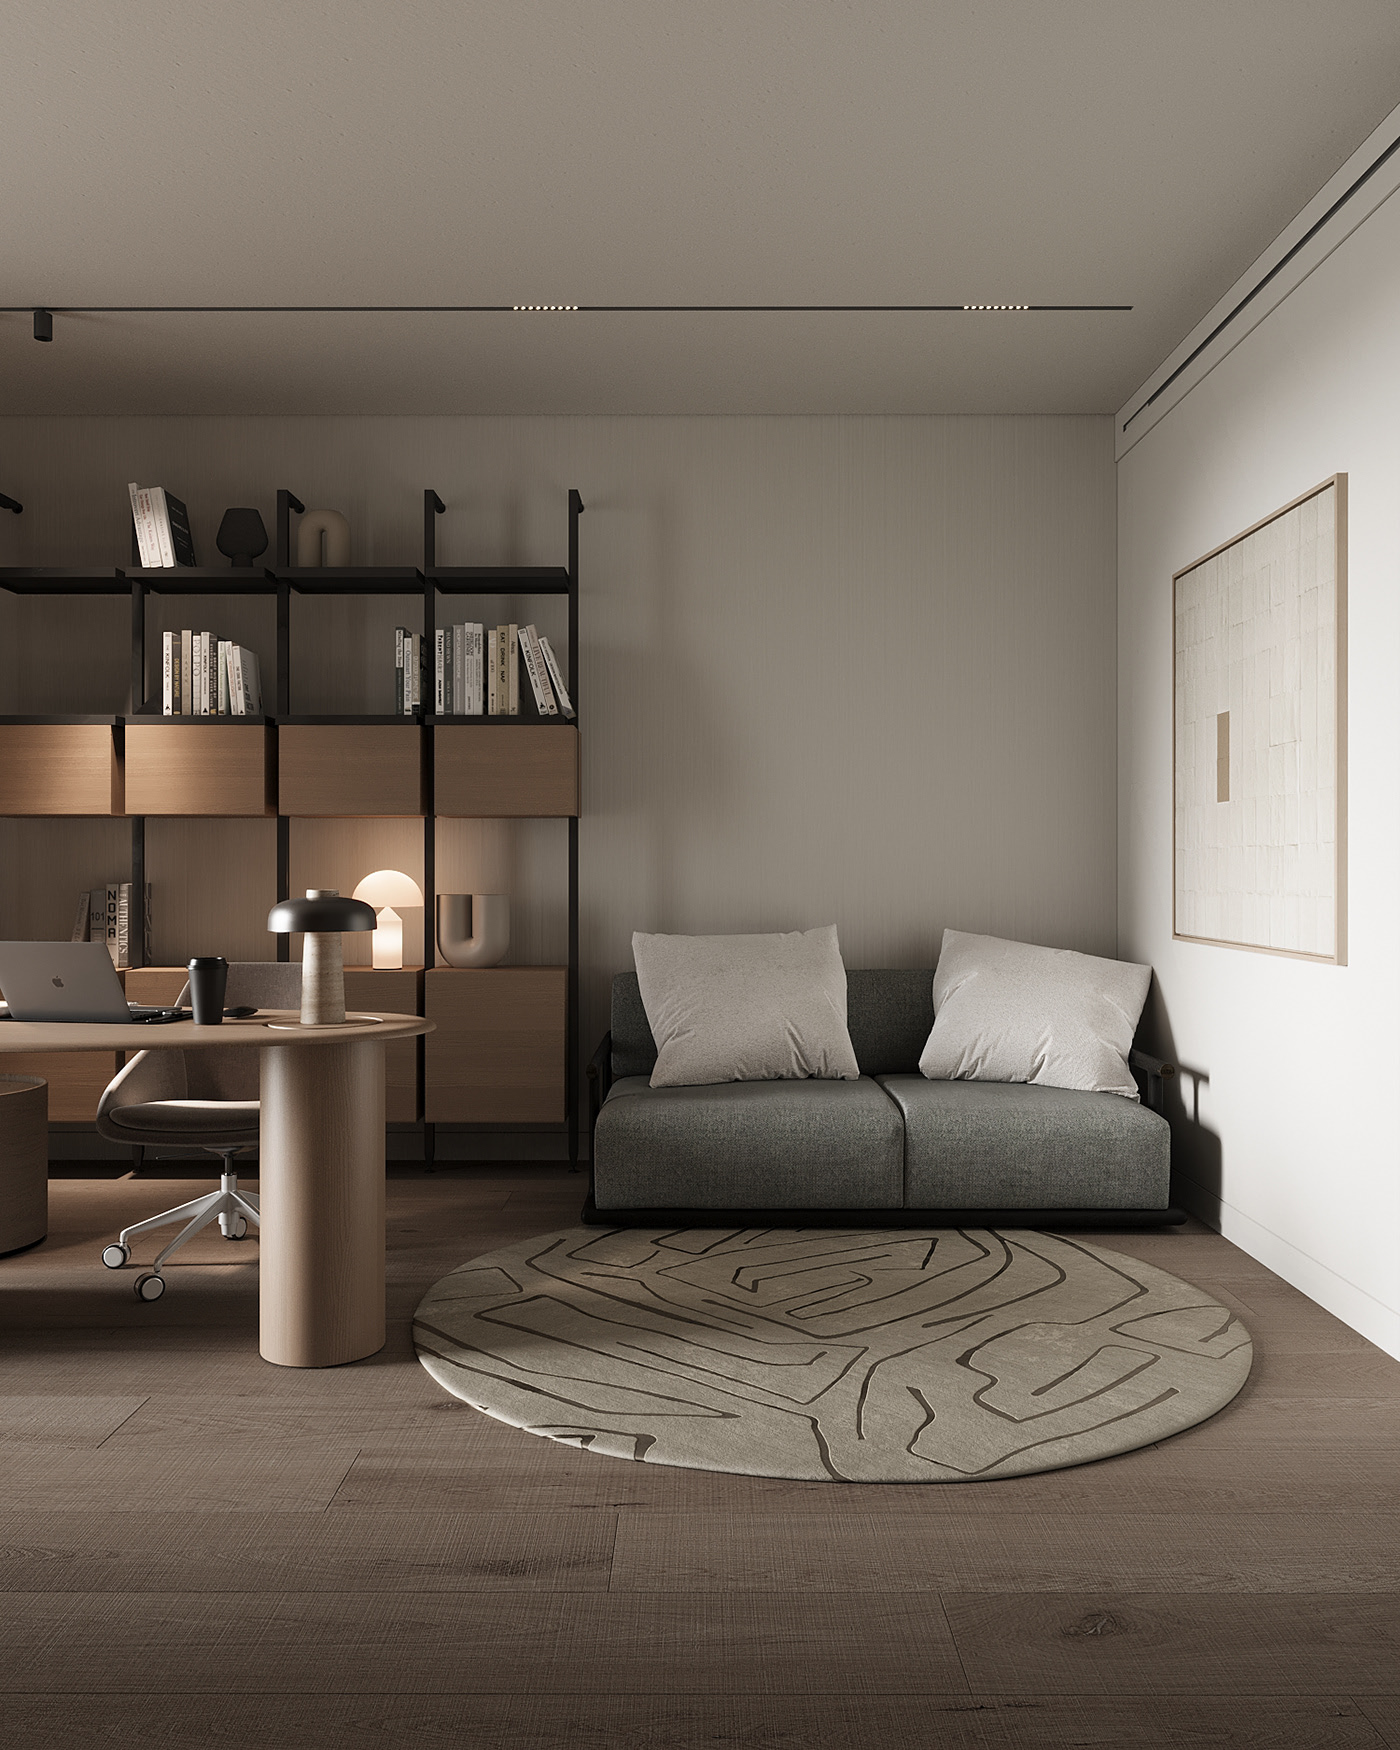 oficce room minimalism